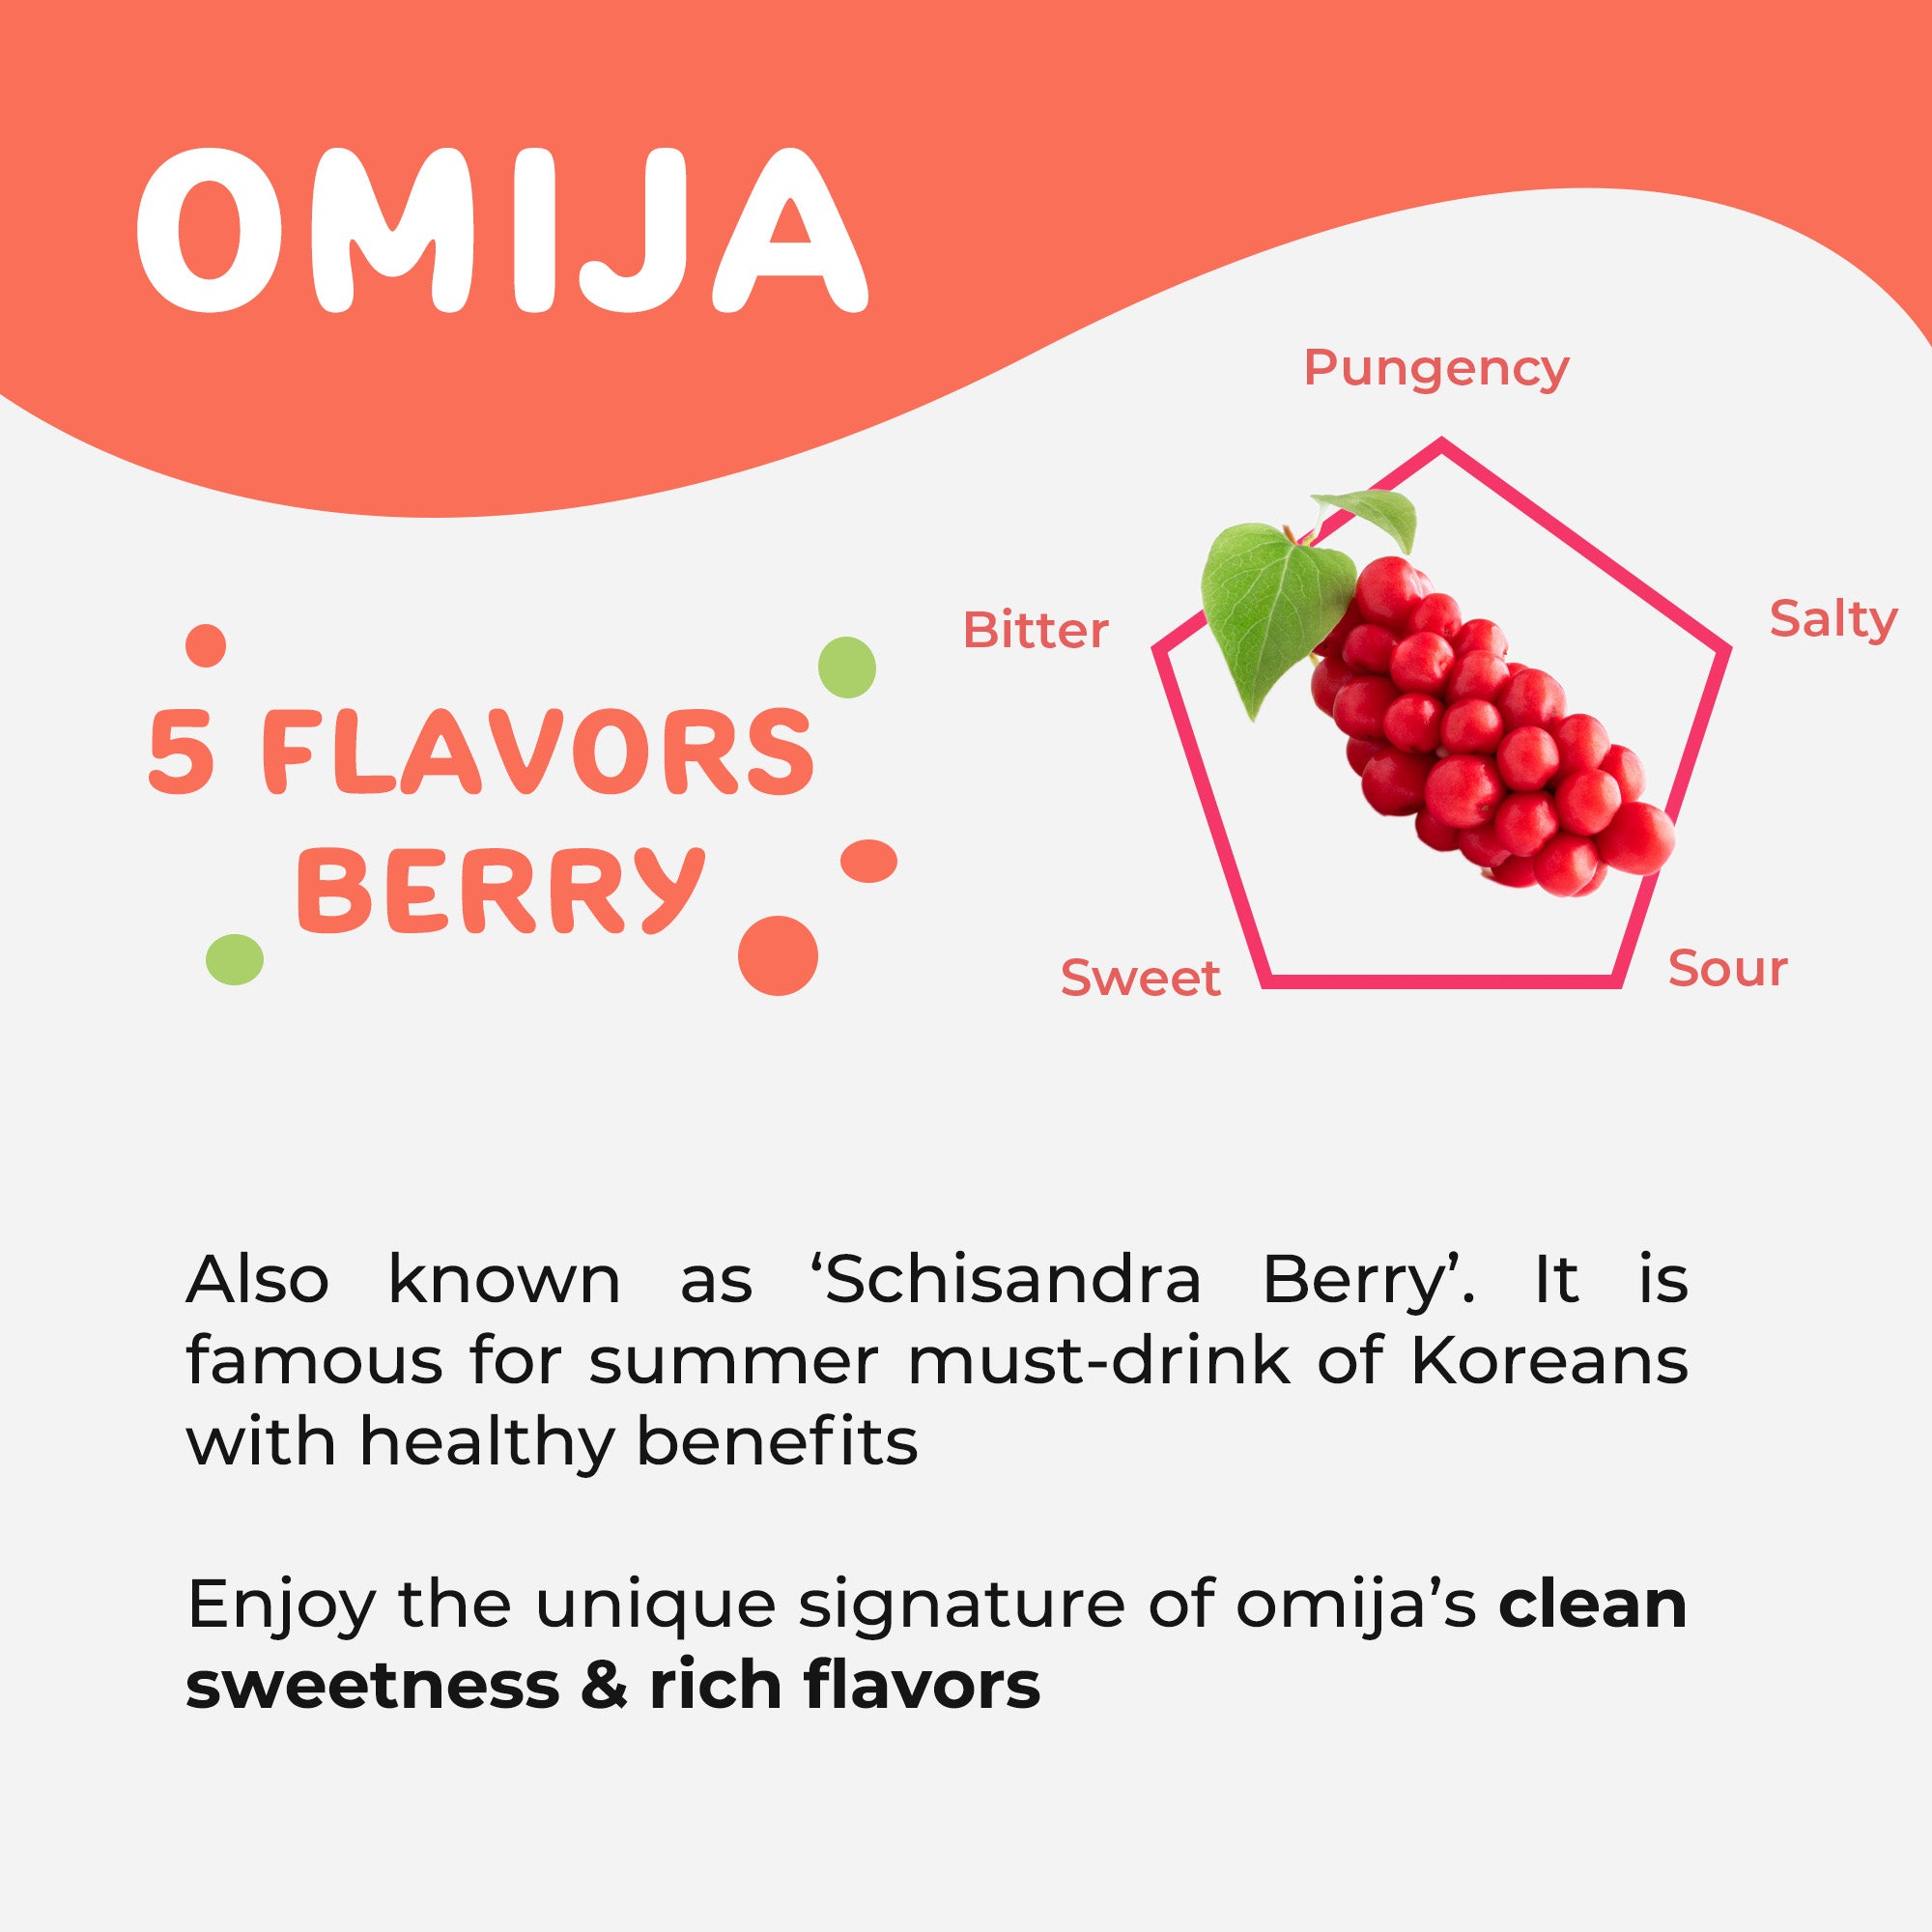 Features of Omija(Schisandra Berry)